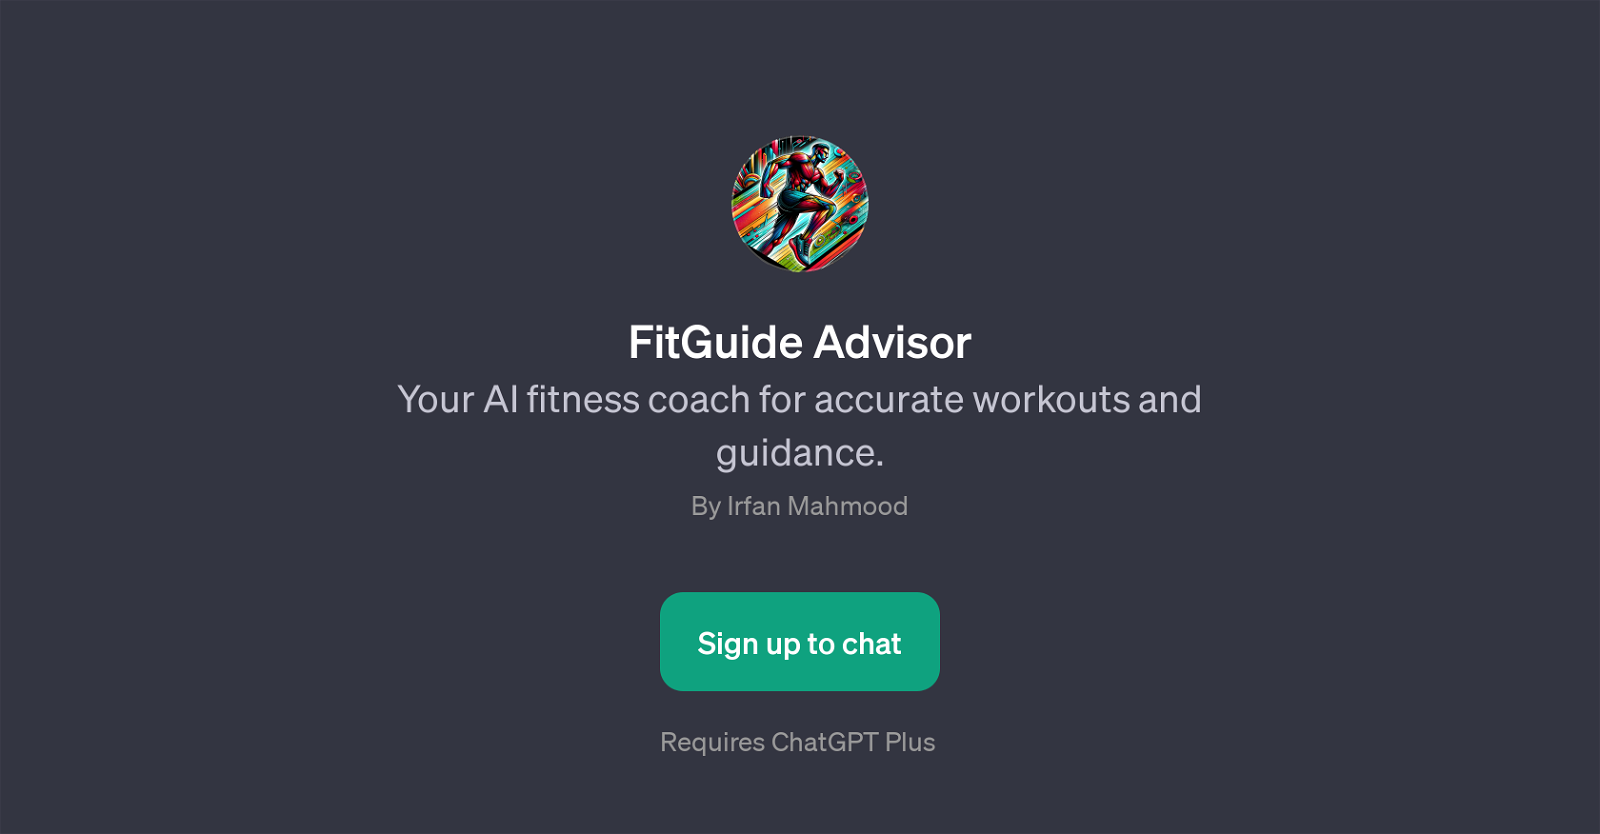 FitGuide Advisor website